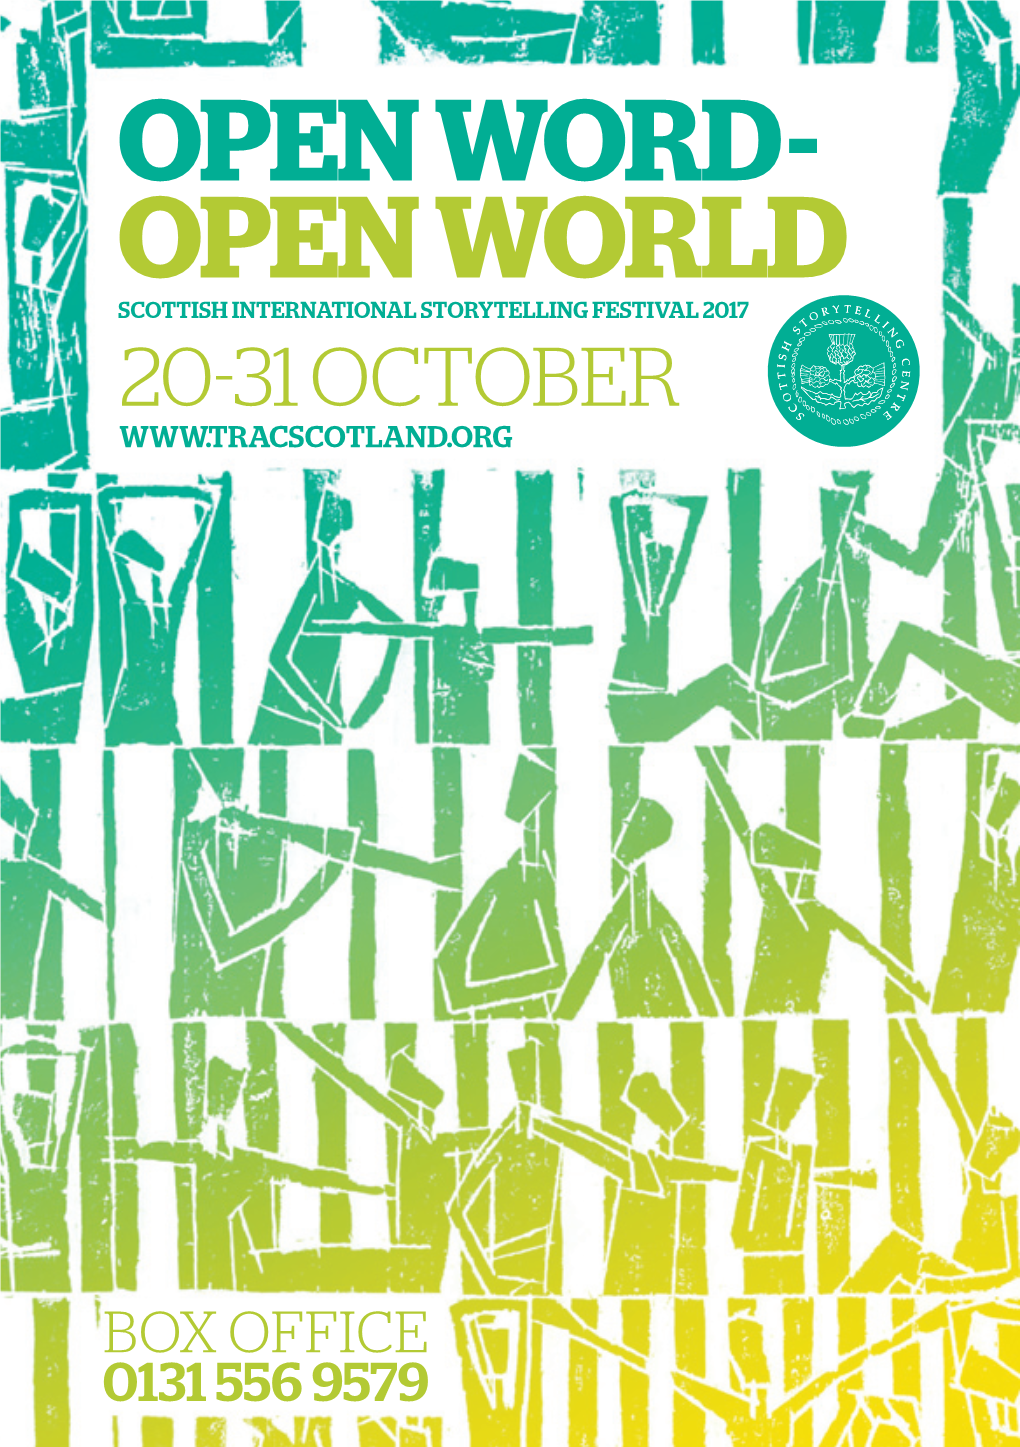 OPEN WORD- OPEN WORLD Scottish International Storytelling Festival 2017 20- 31 October